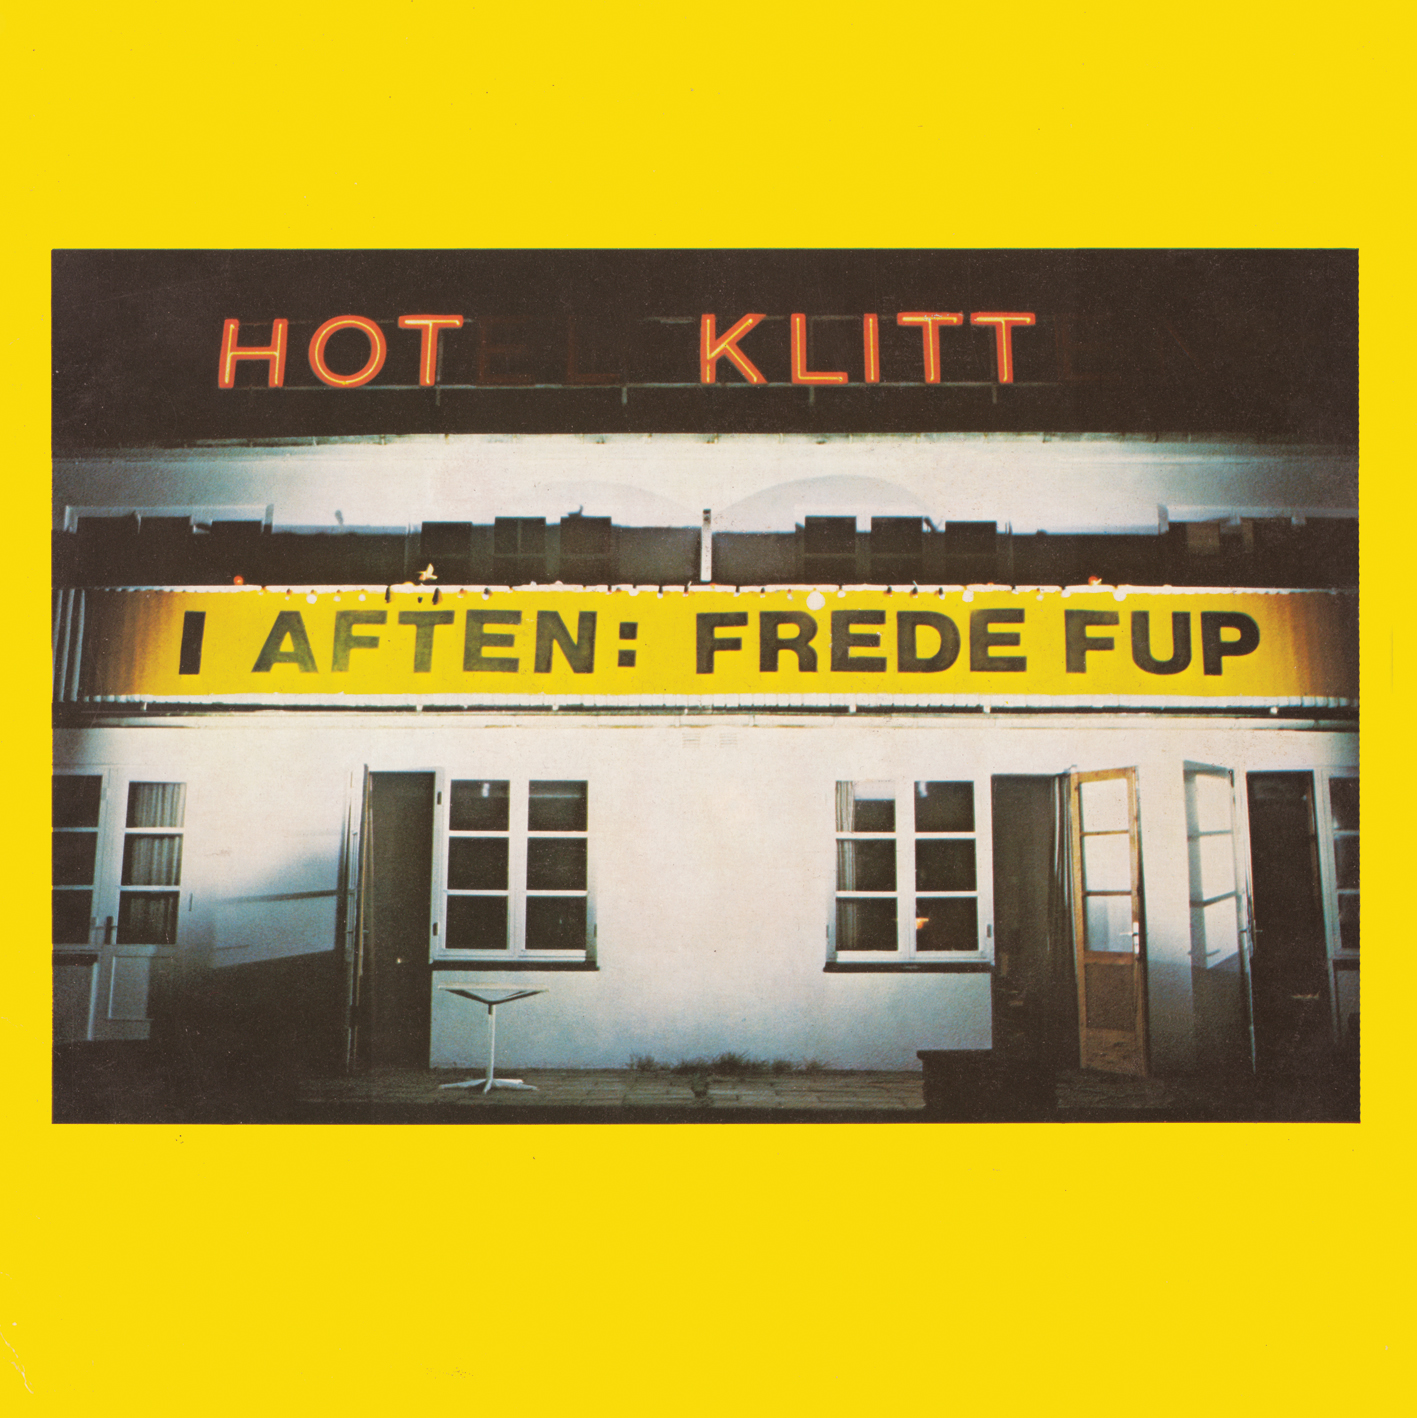 I aften: Frede Fup (Hot Klitt) by Frede Fup